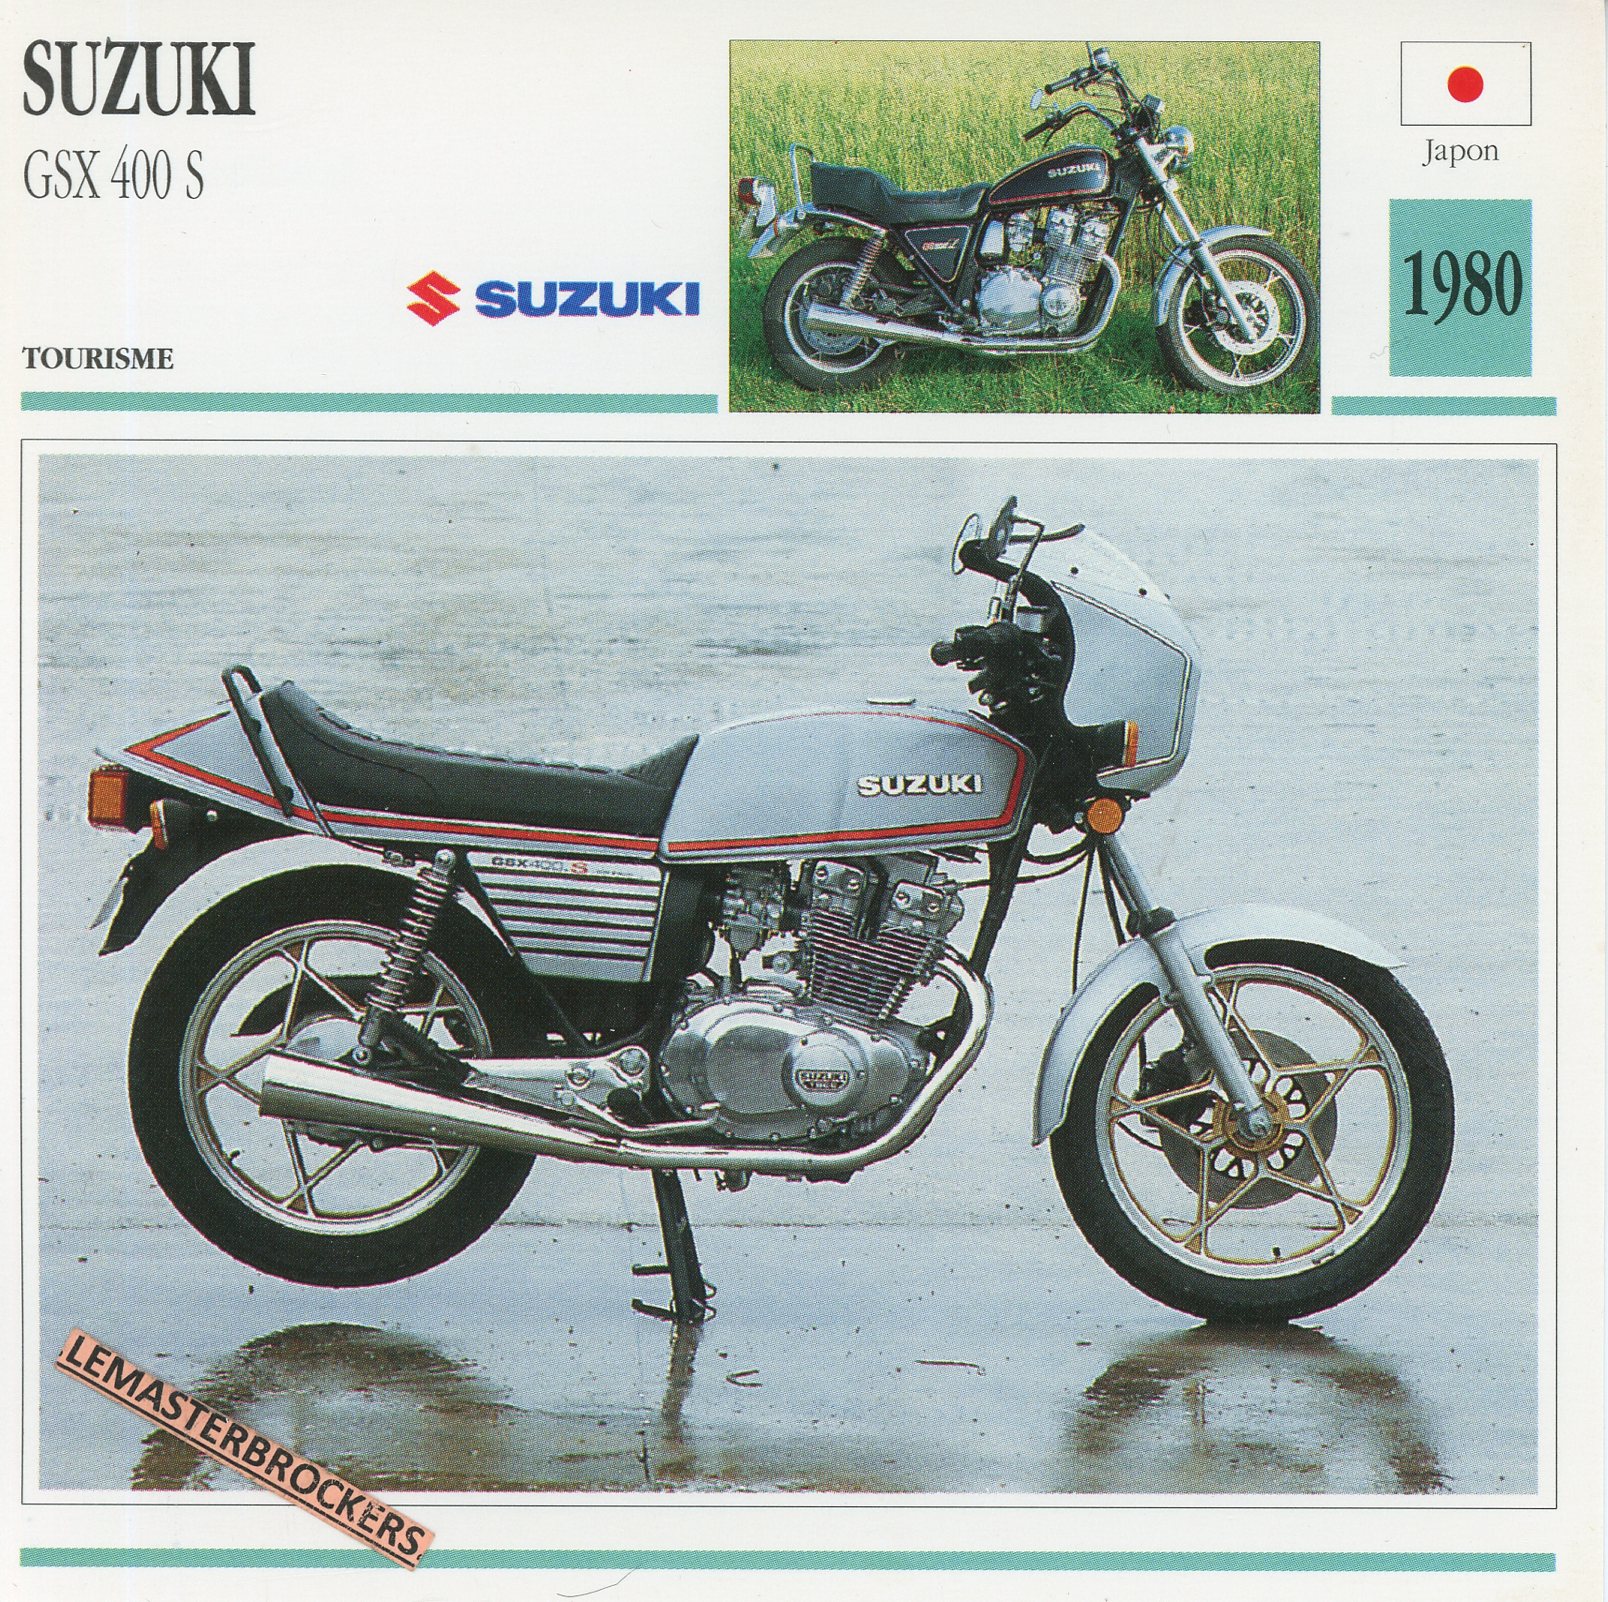 SUZUKI-gsx400-gsx-400-1980-FICHE-MOTO-LEMASTERBROCKERS-gsx400s